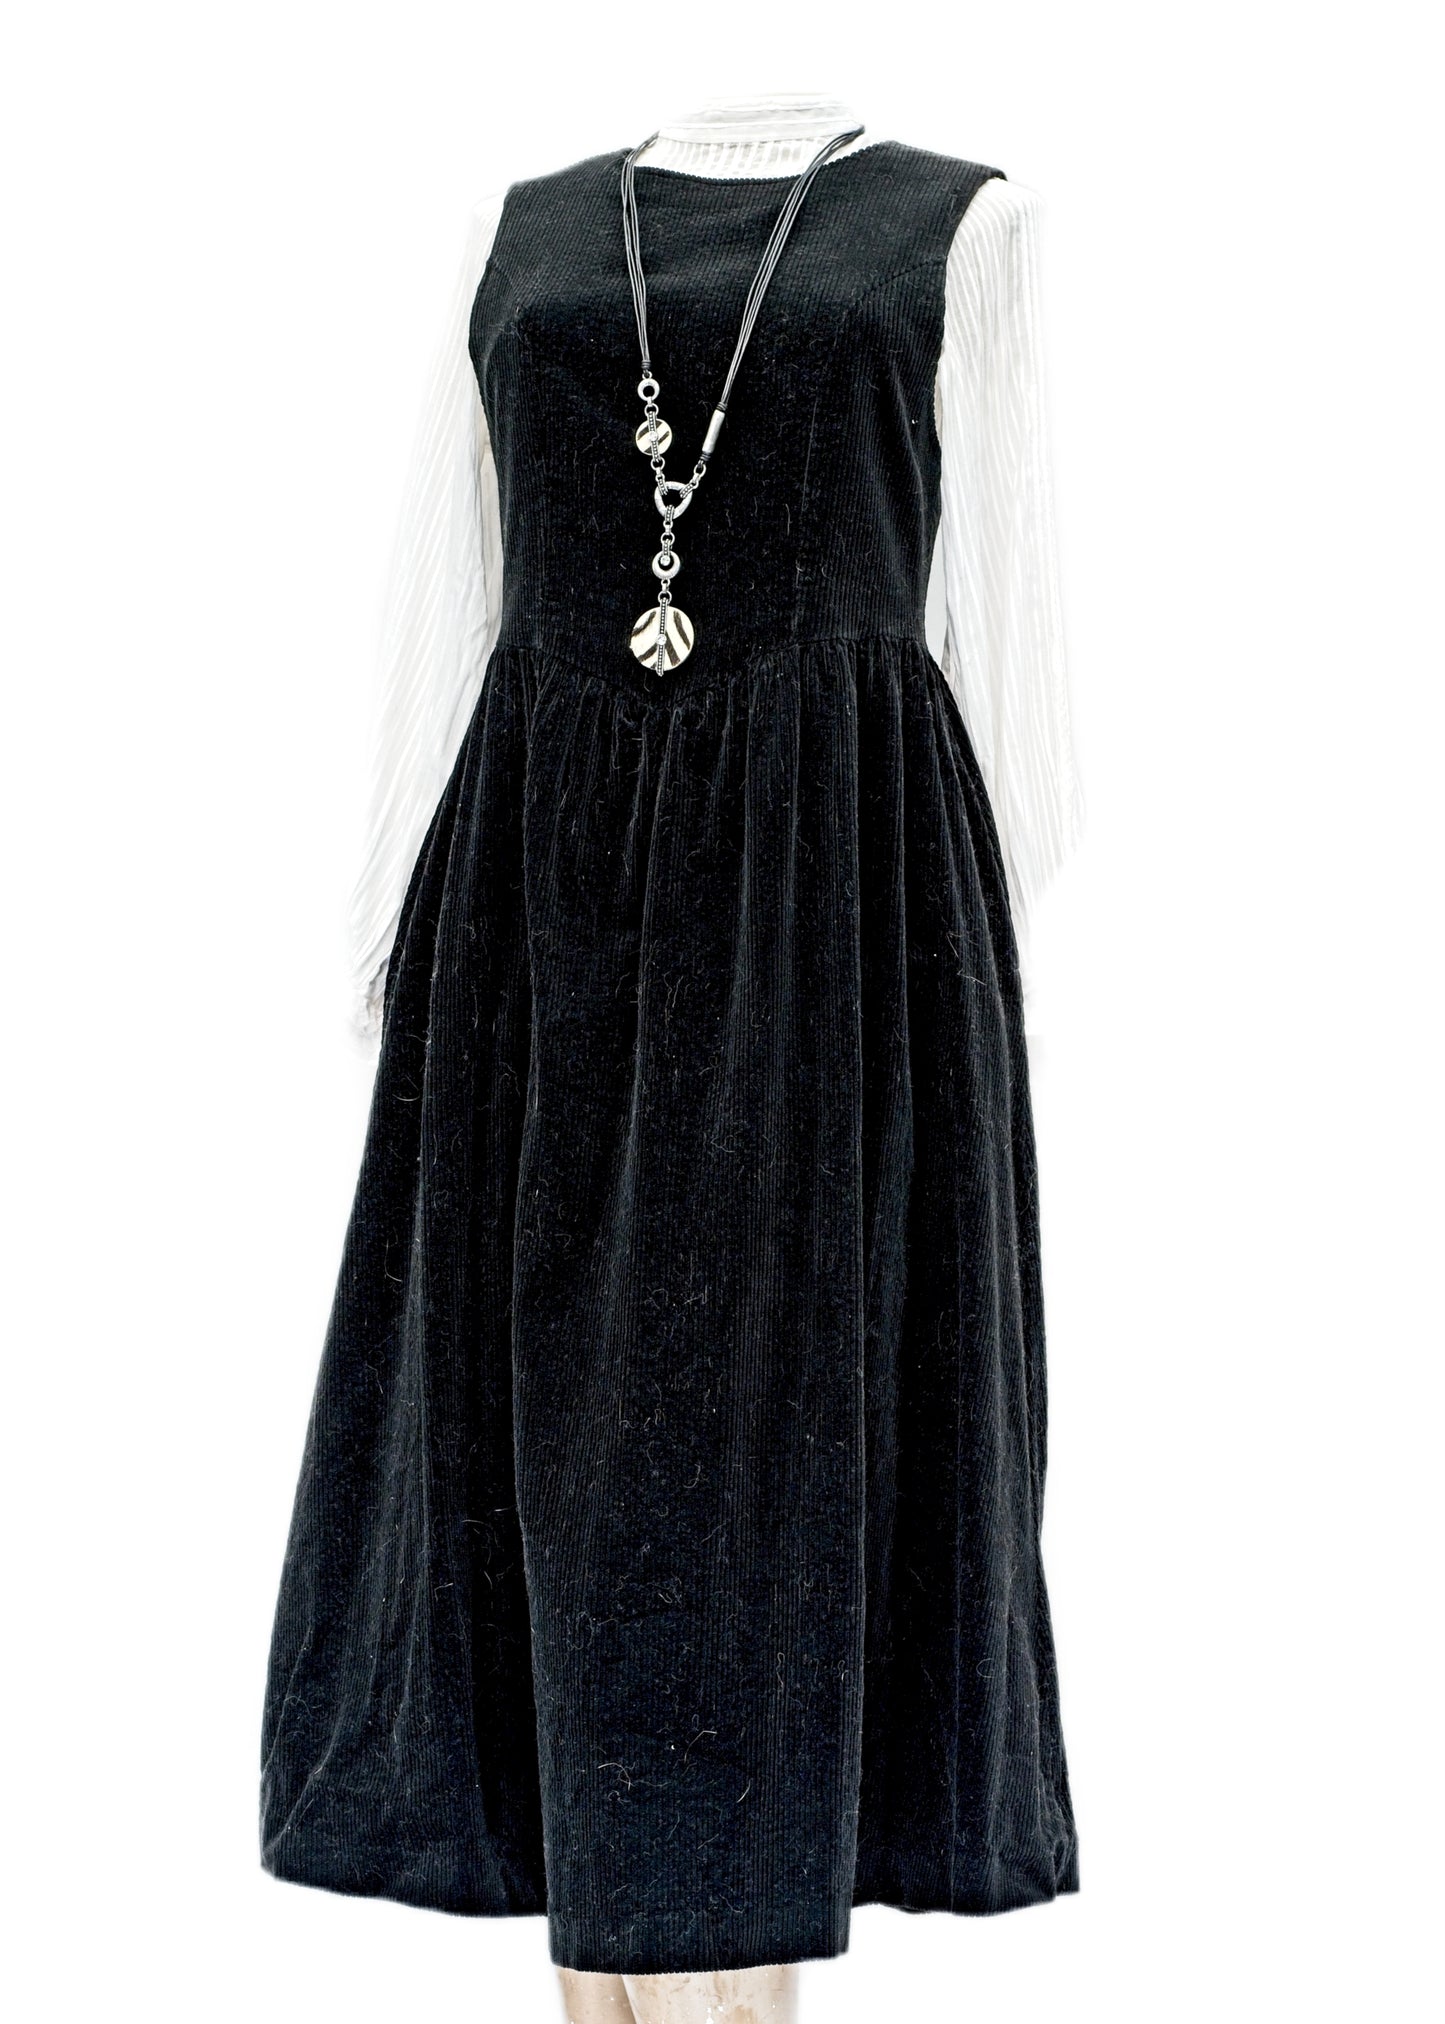 Vintage Black Corduroy Laura Ashley Sleeveless Dress • Size 8 - 10